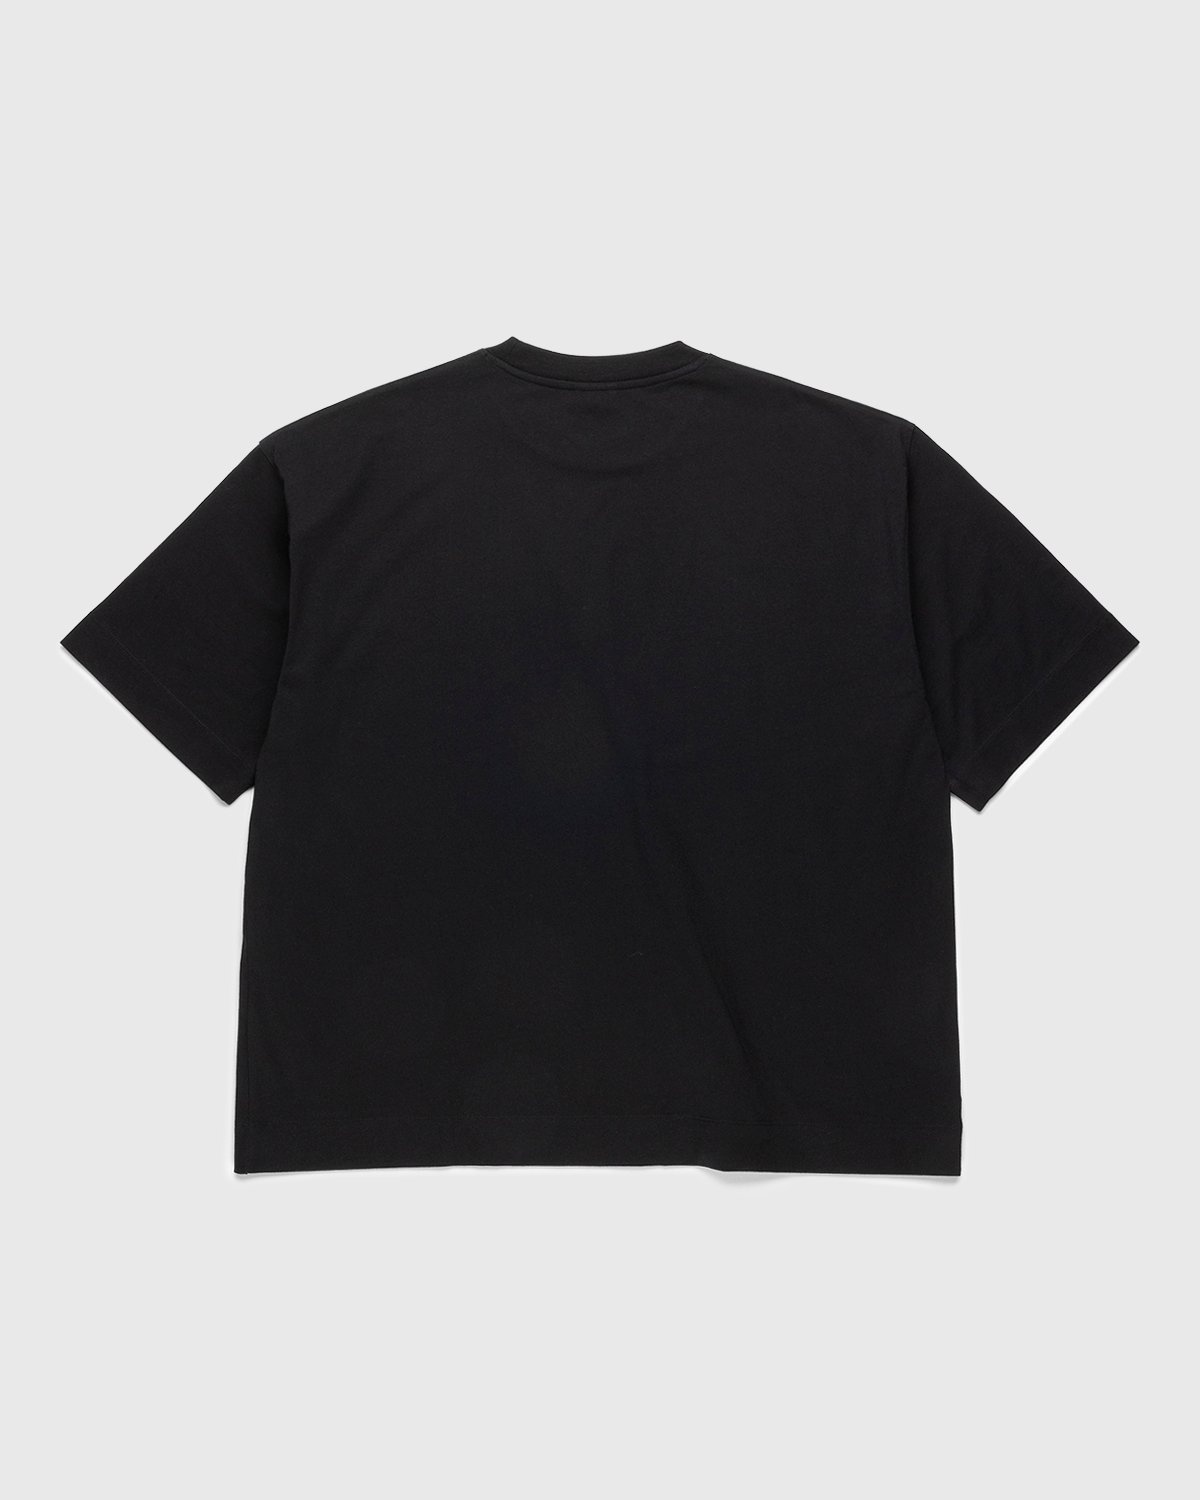 Dries Van Noten X Yoshirotten Mika Habs T-shirt In Black